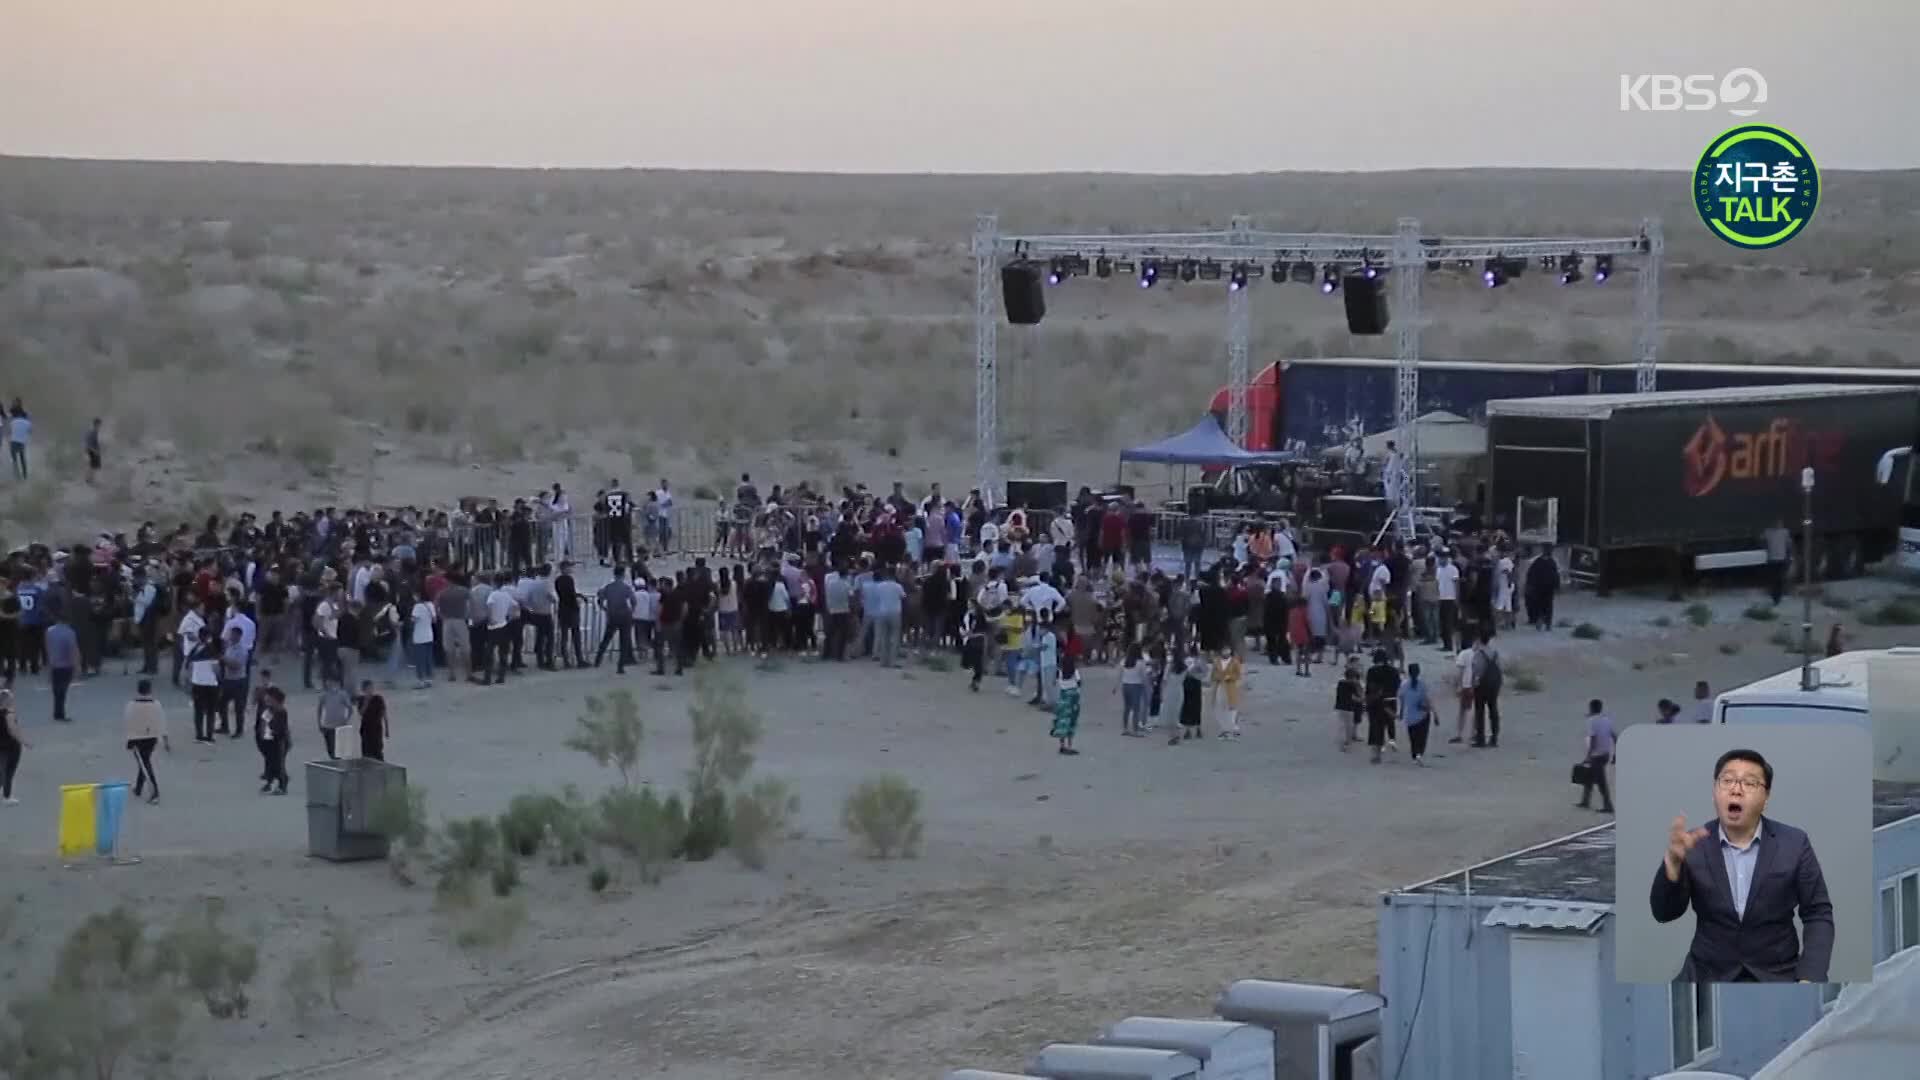 [지구촌 Talk] 사막화 호수 위 음악 축제…아랄해 환경 문제 주목